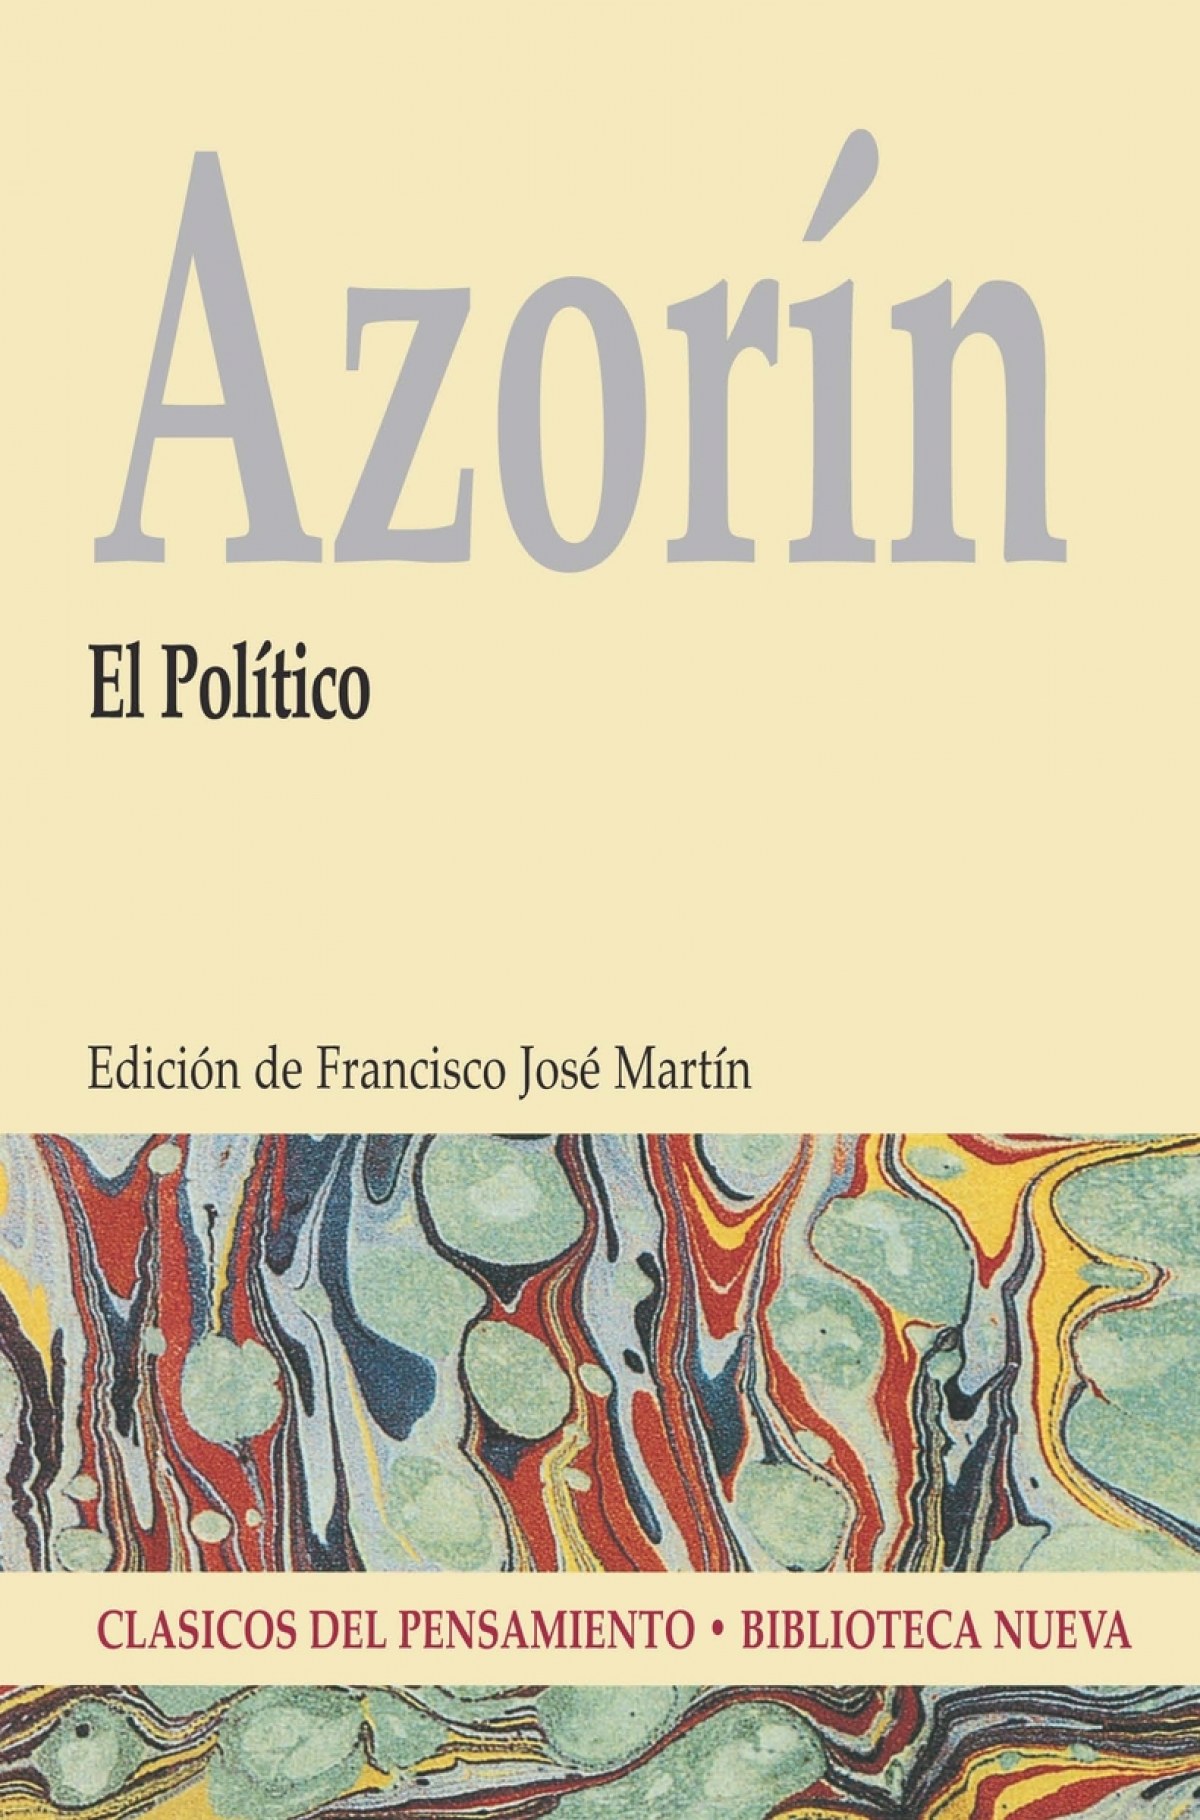 El politico - Azorin